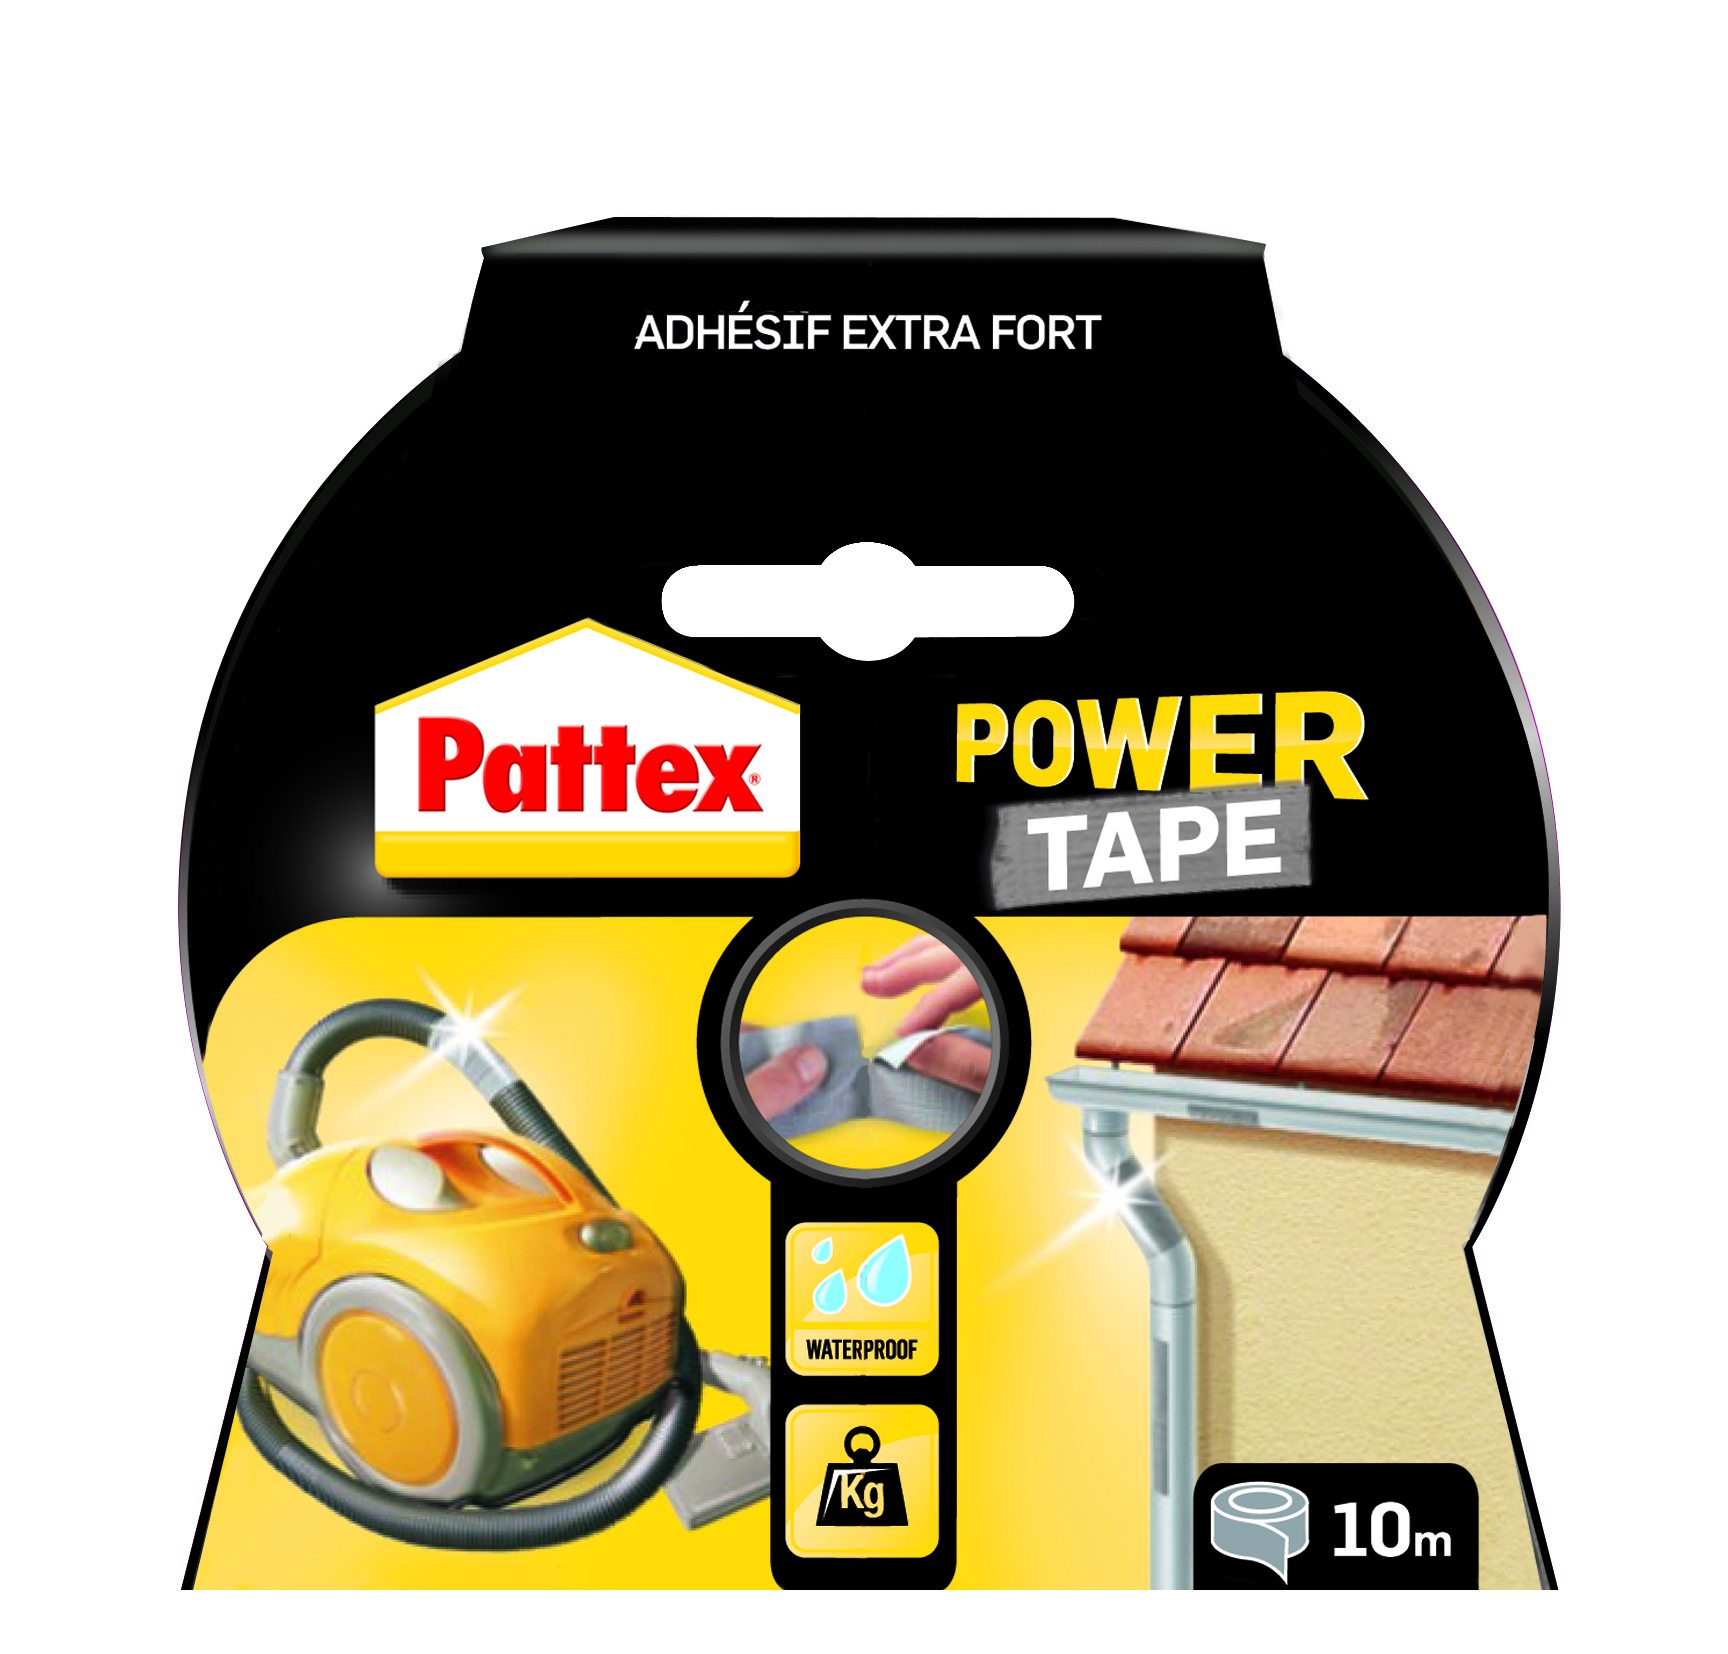 Pattex adhésifs réparation power tape gris etui 10m - PATTEX